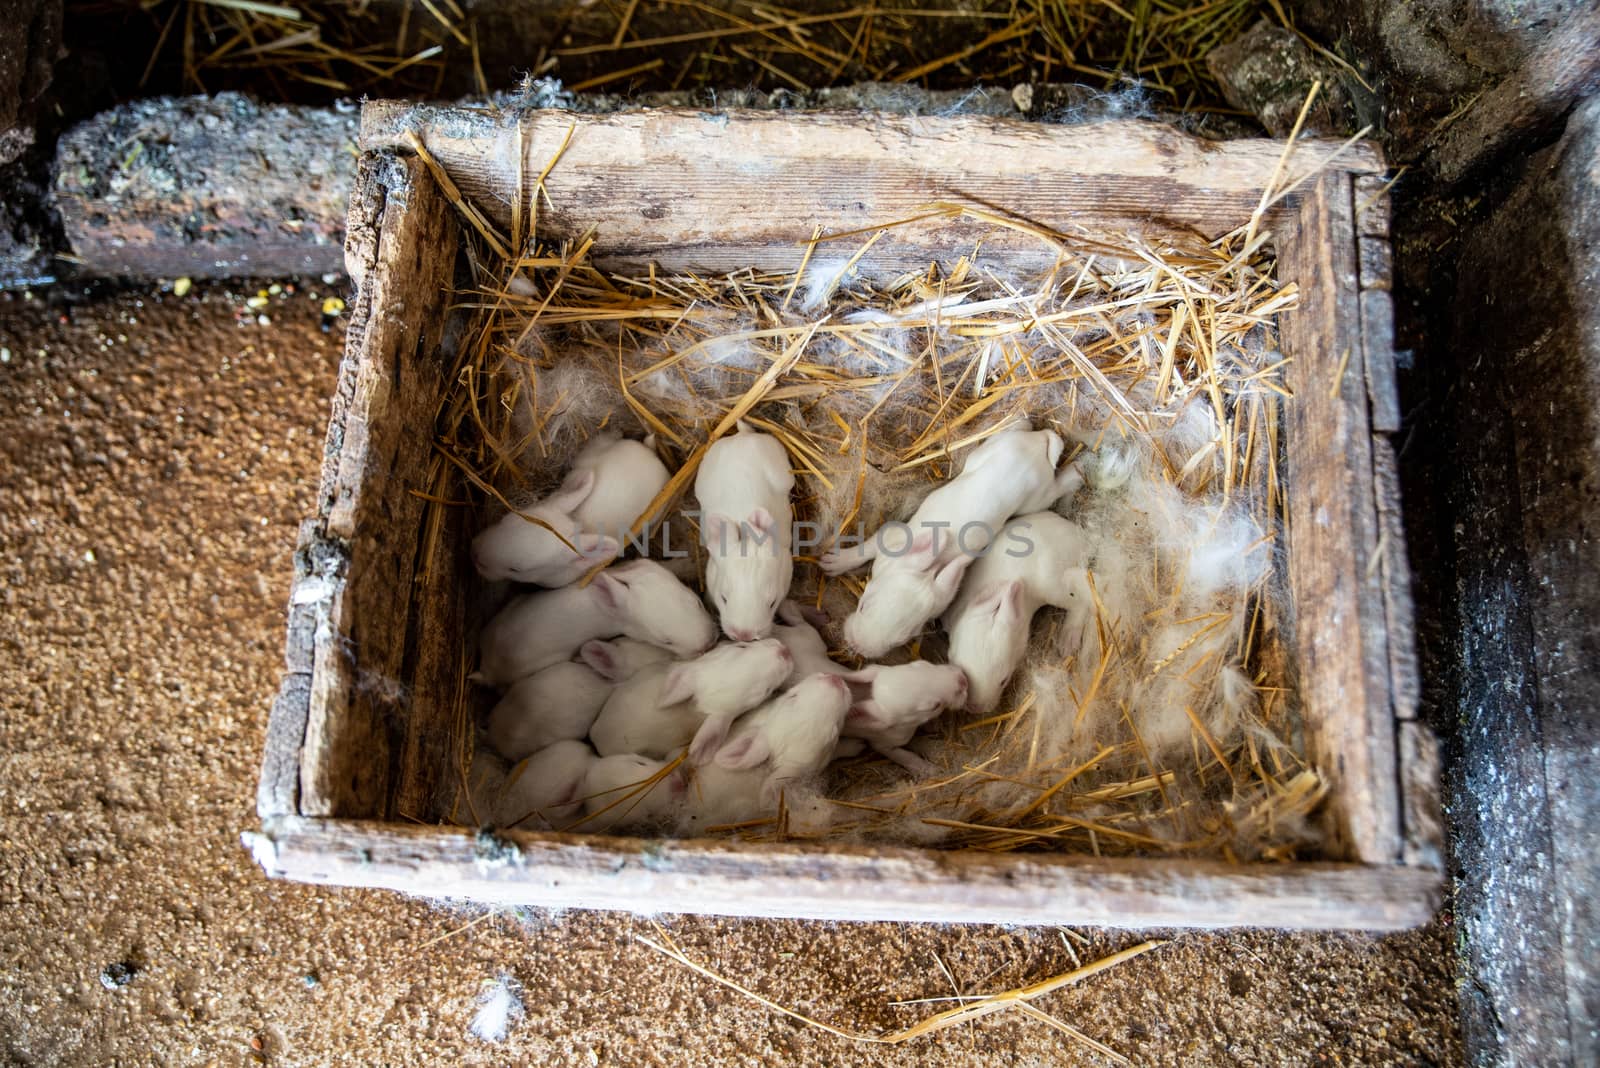 newborn bunnies by carfedeph